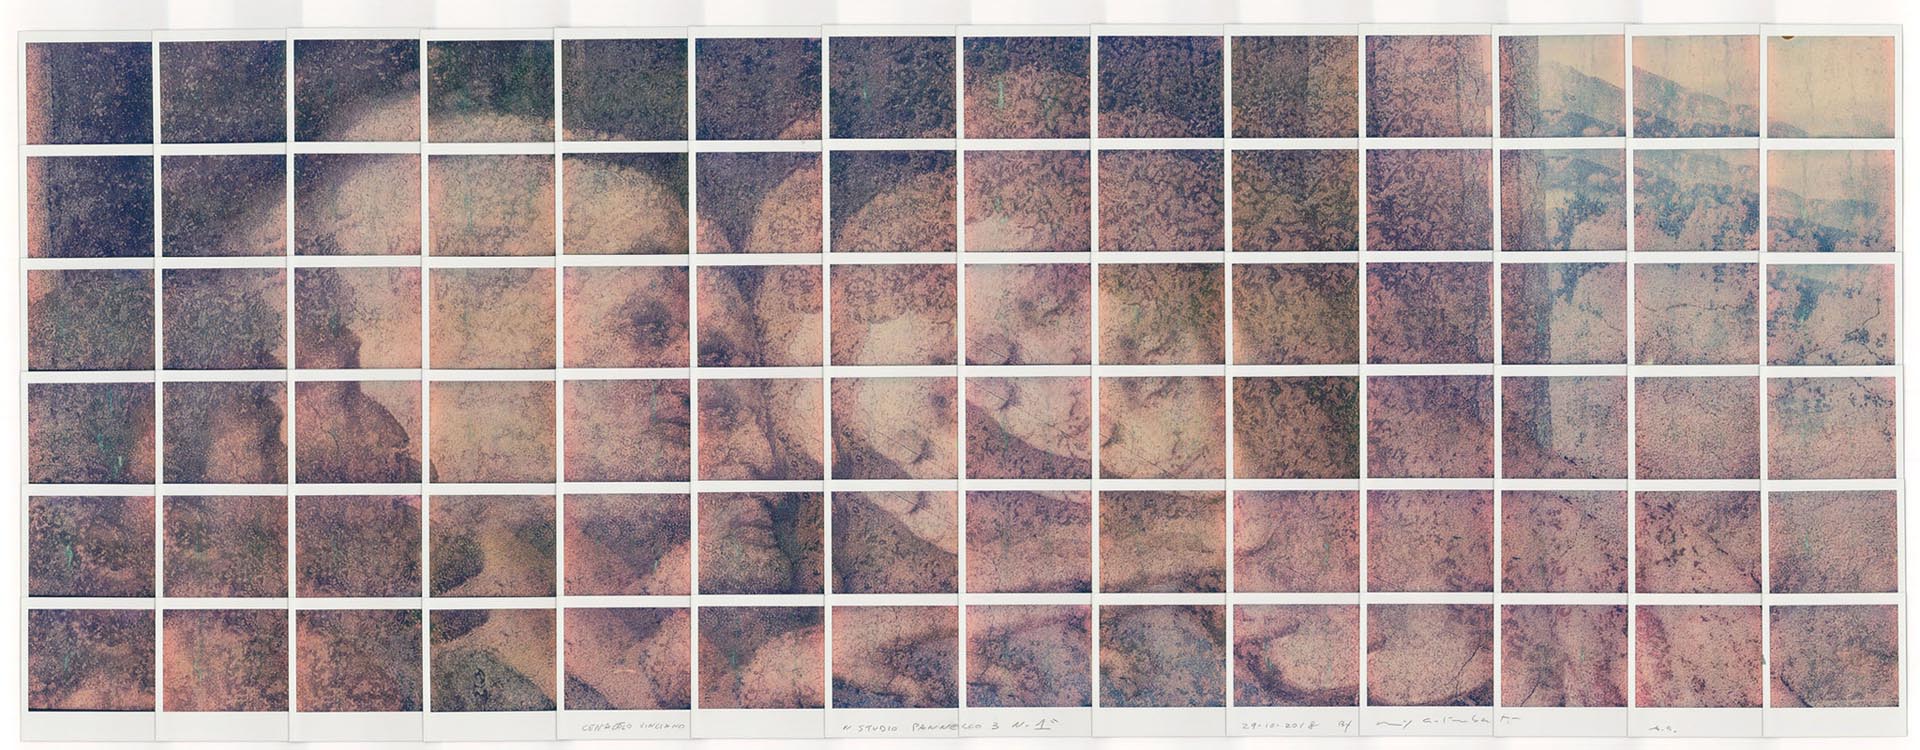 Il cenacolo vinciano nei mosaici di polaroid di Maurizio Galimberti